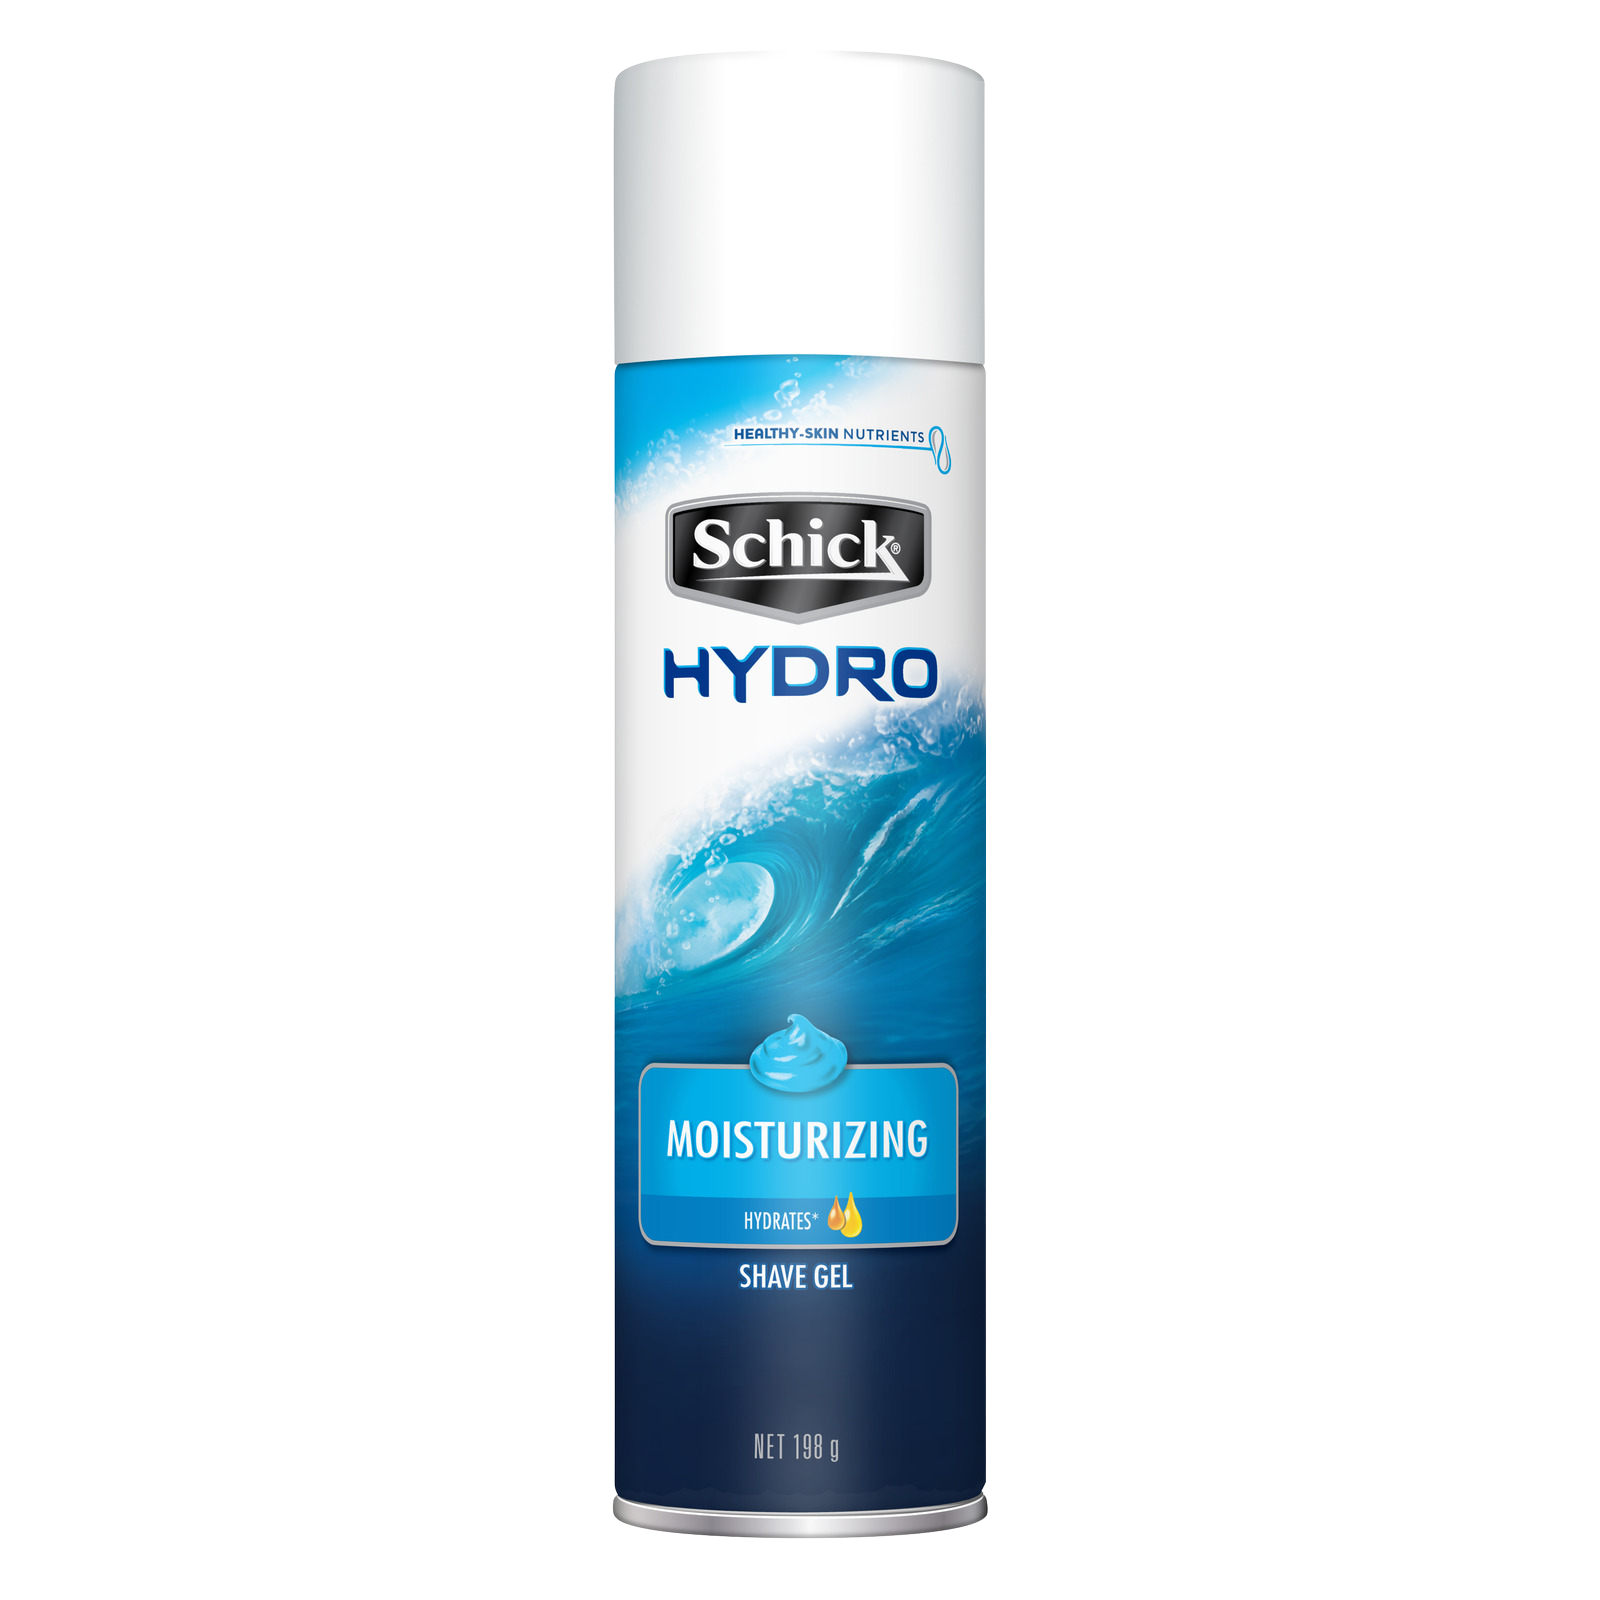 hydro-moisturising-shave-gel-schick-hydro-nz